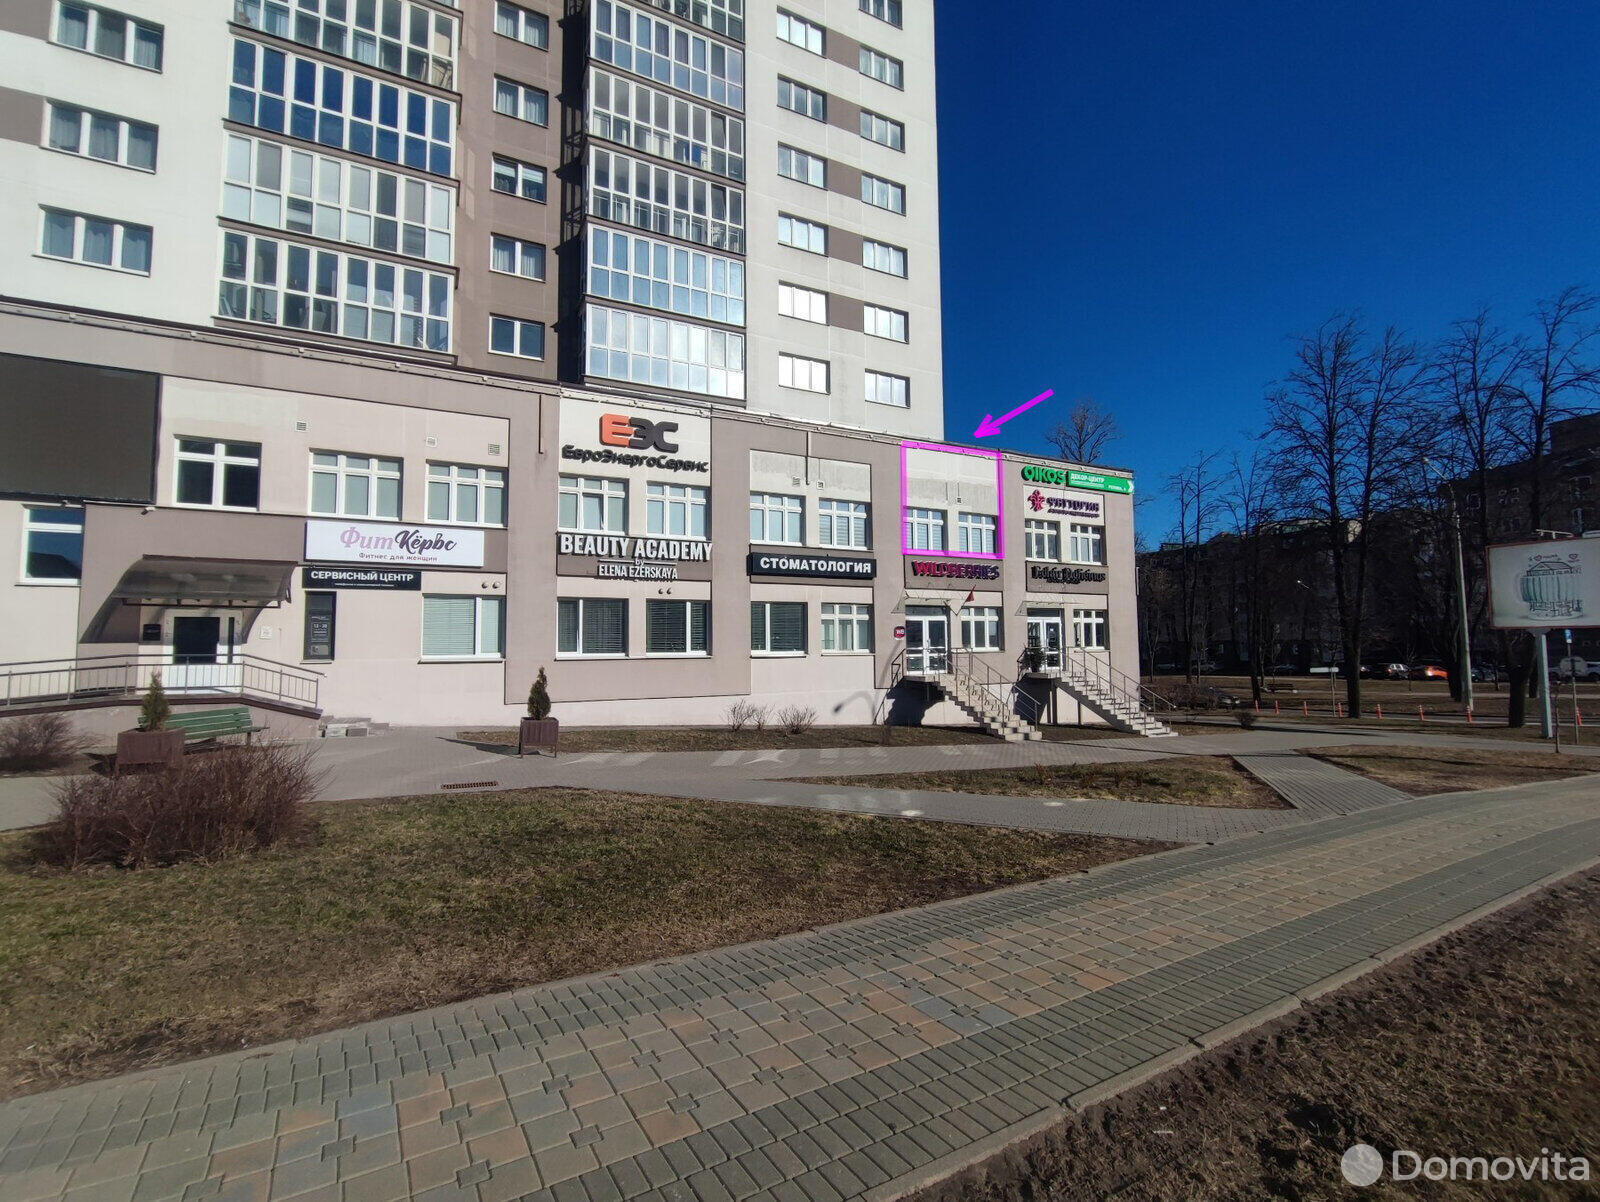 Аренда торговой точки на ул. Грибоедова, д. 1 в Минске, 5236BYN, код 964923 - фото 1